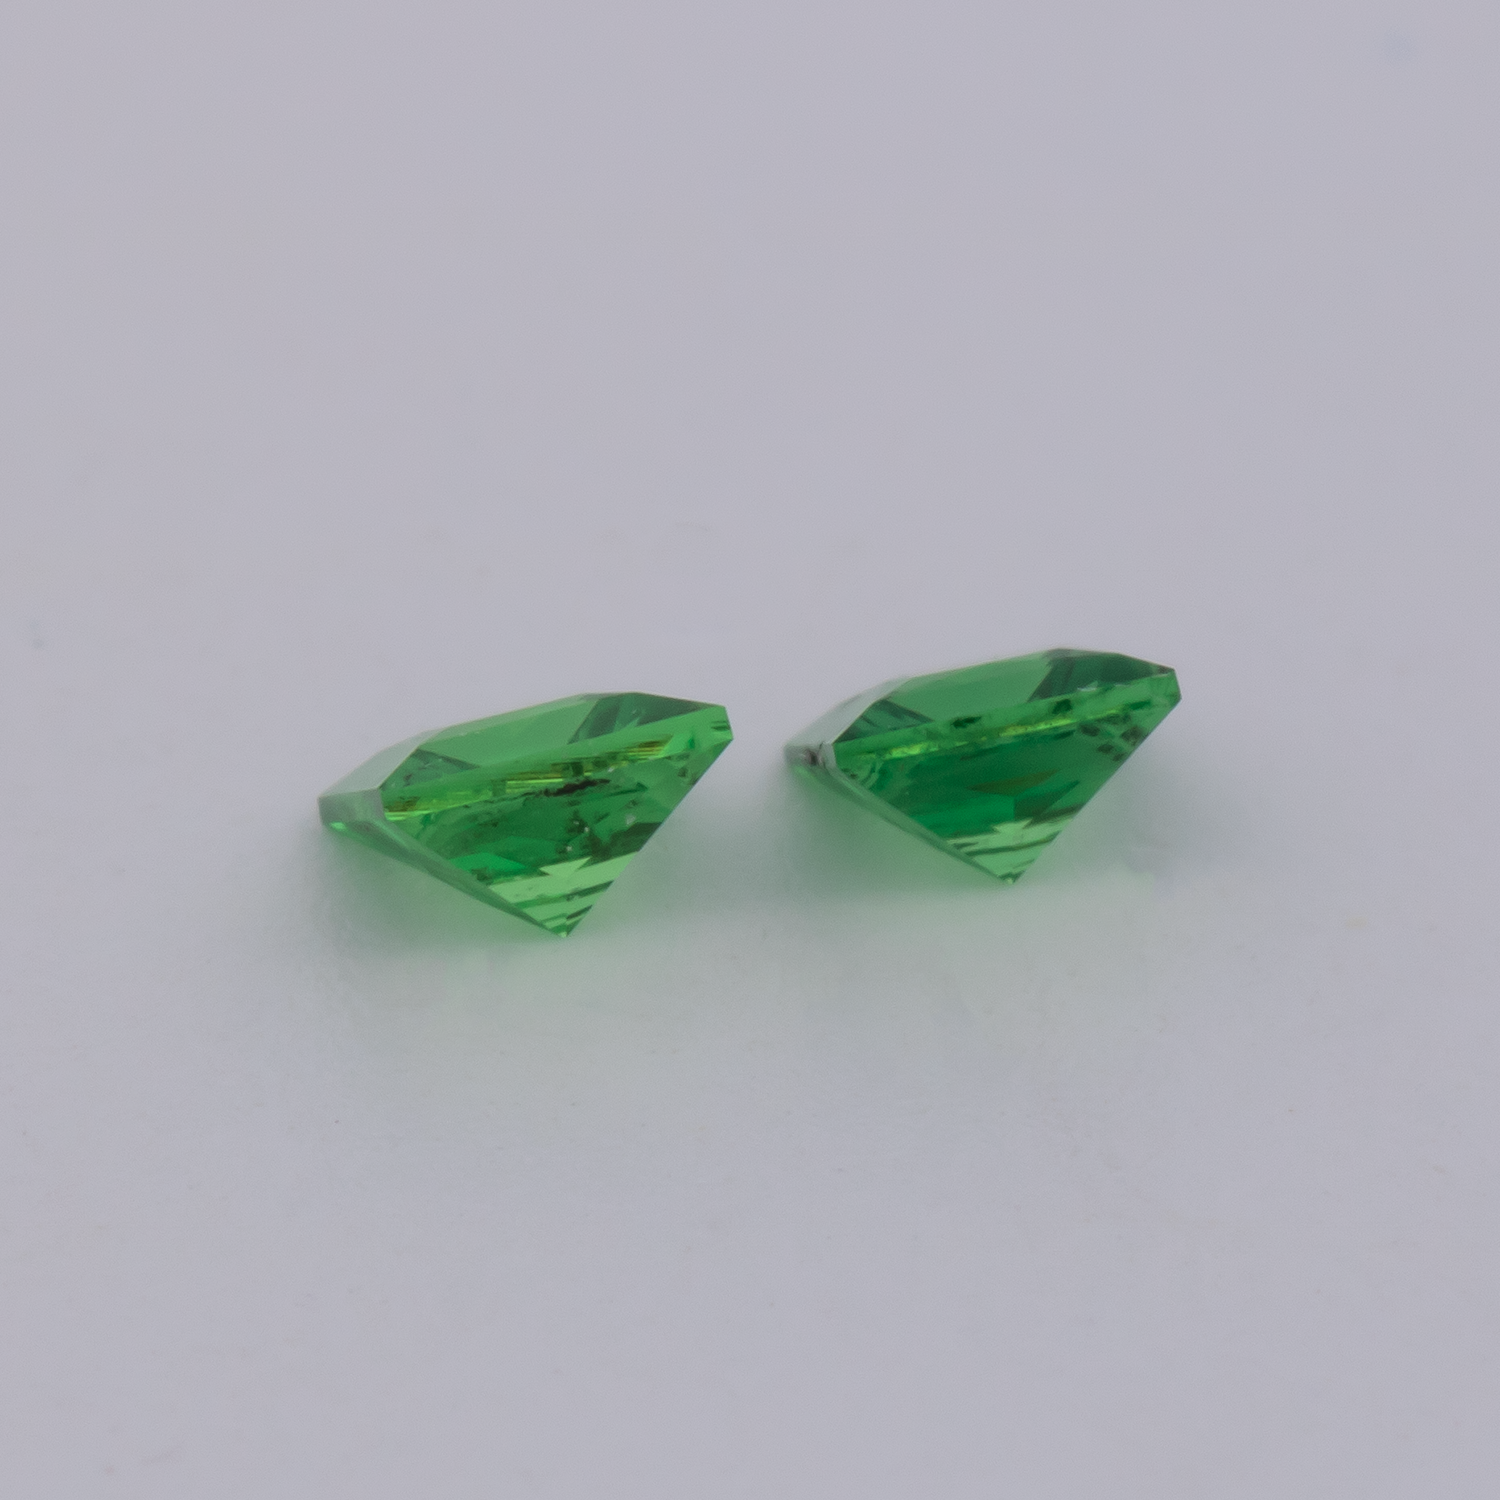 Tsavorit Paar - grün, rechteck, 3x3 mm, 0.29 cts, Nr. TS91021